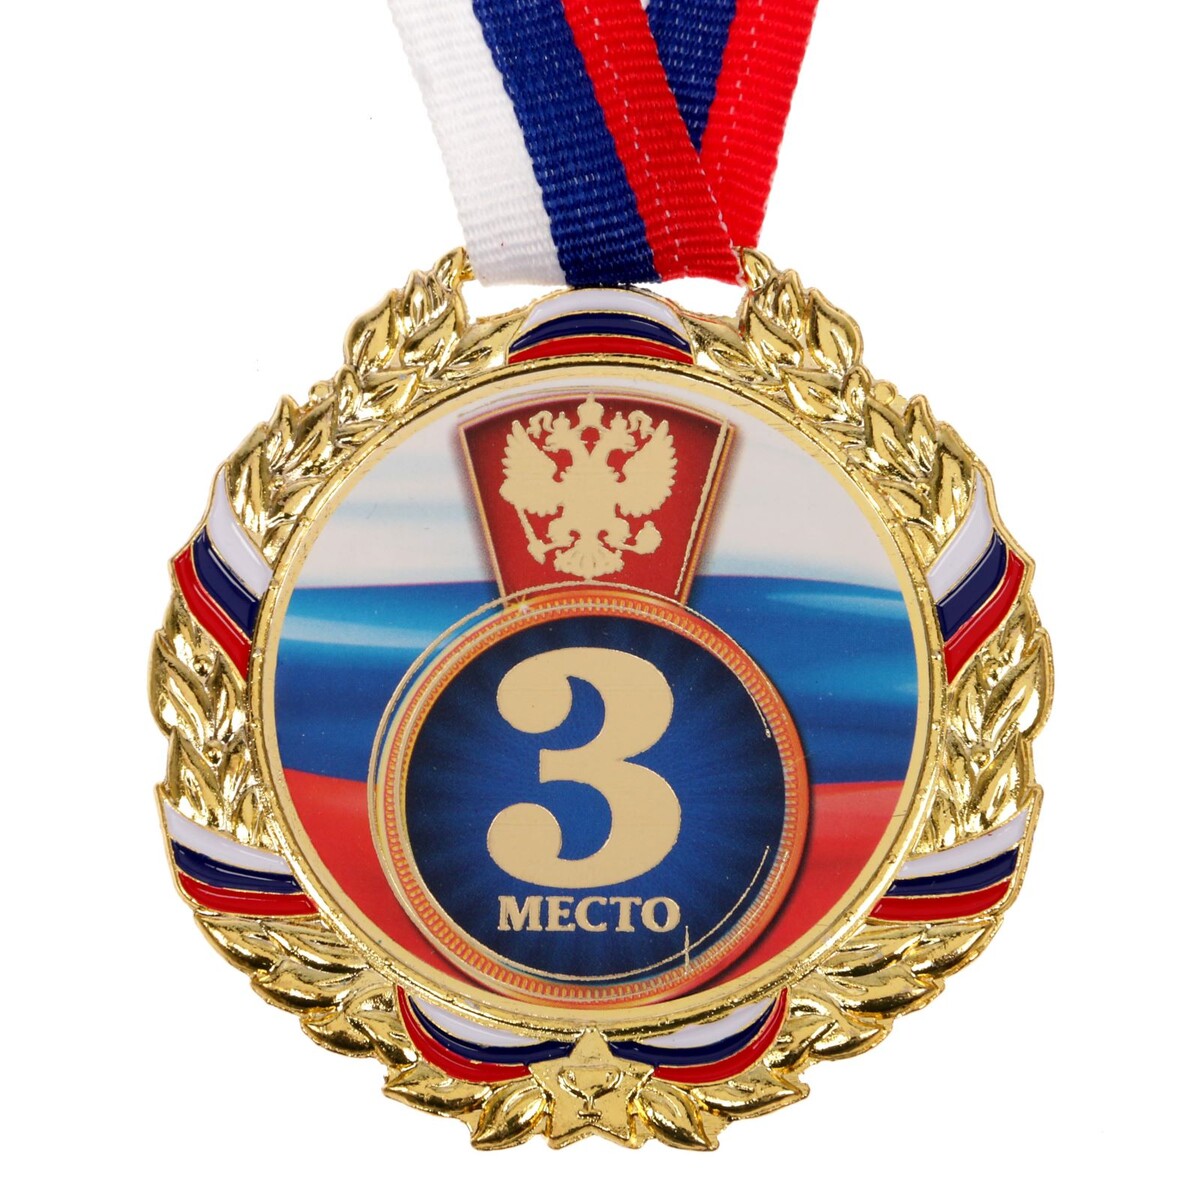 Медаль призовая 006 диам 7 см. 3 место, триколор. цвет зол. с лентой